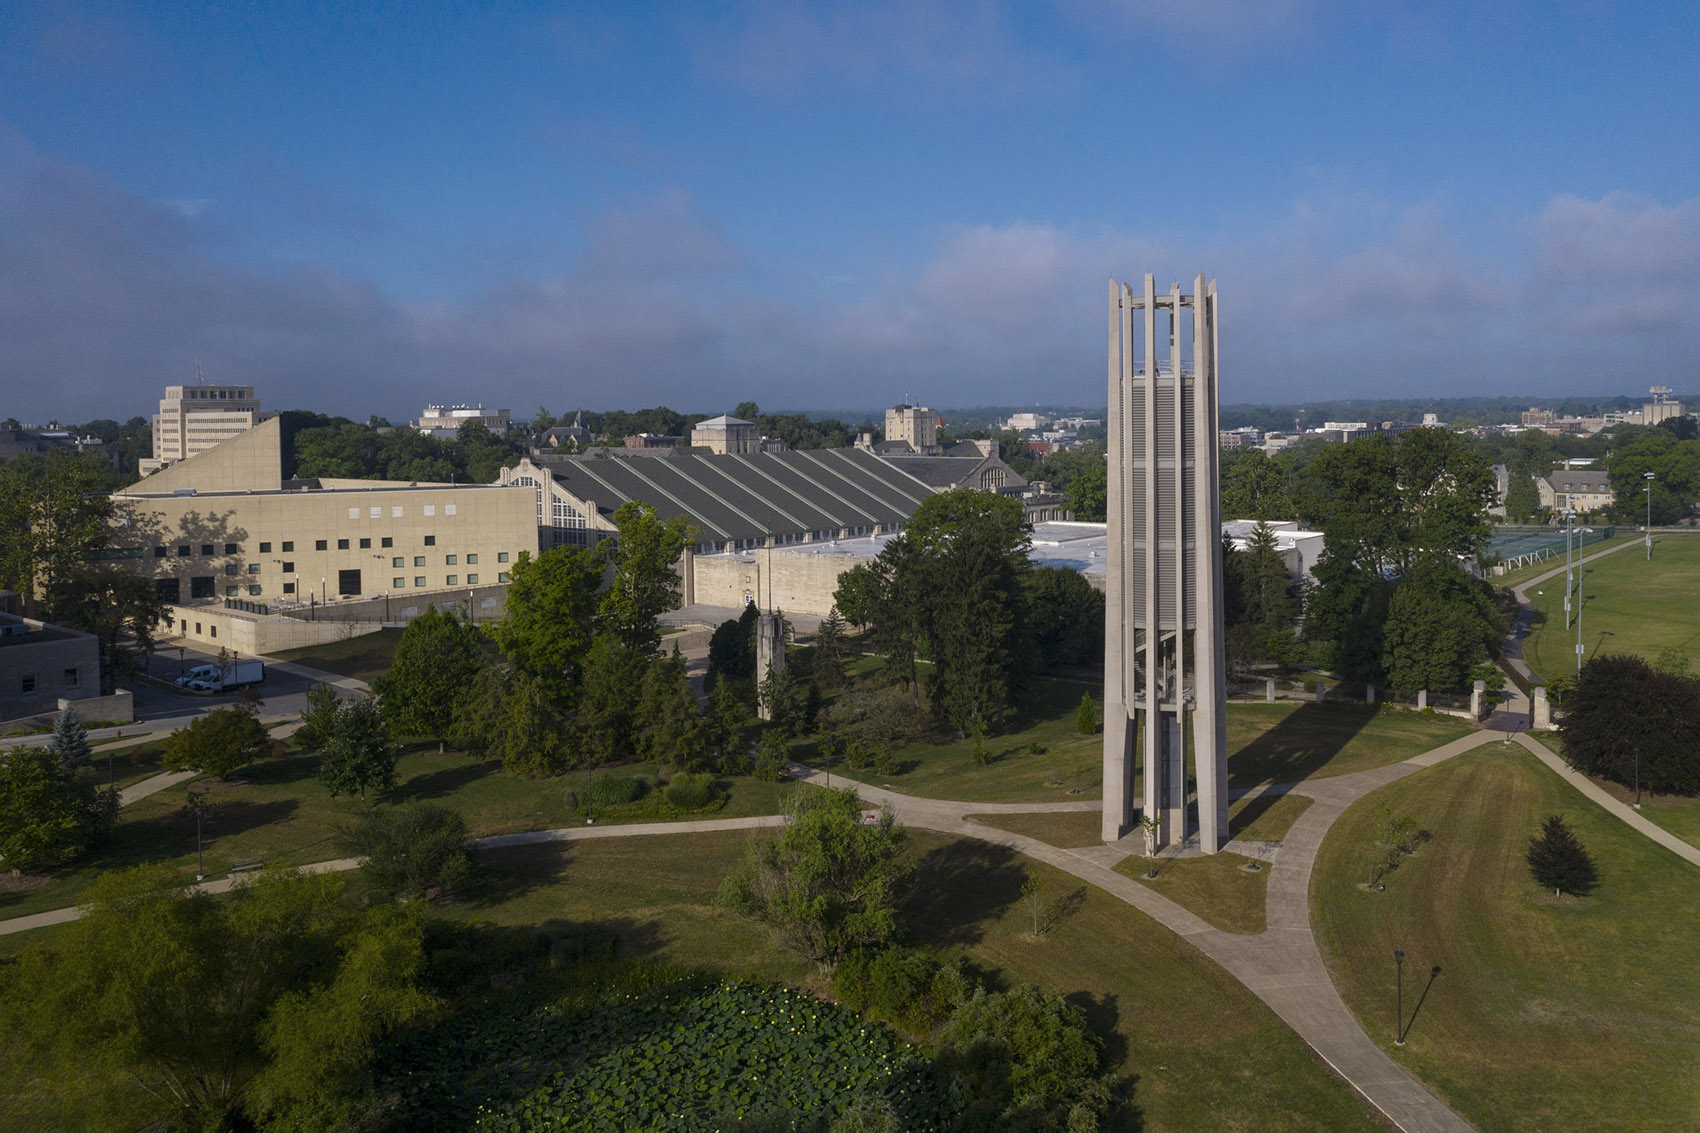 印第安纳大学钟琴塔，美国/印第安纳大学两百周年校庆的纪念钟塔-2